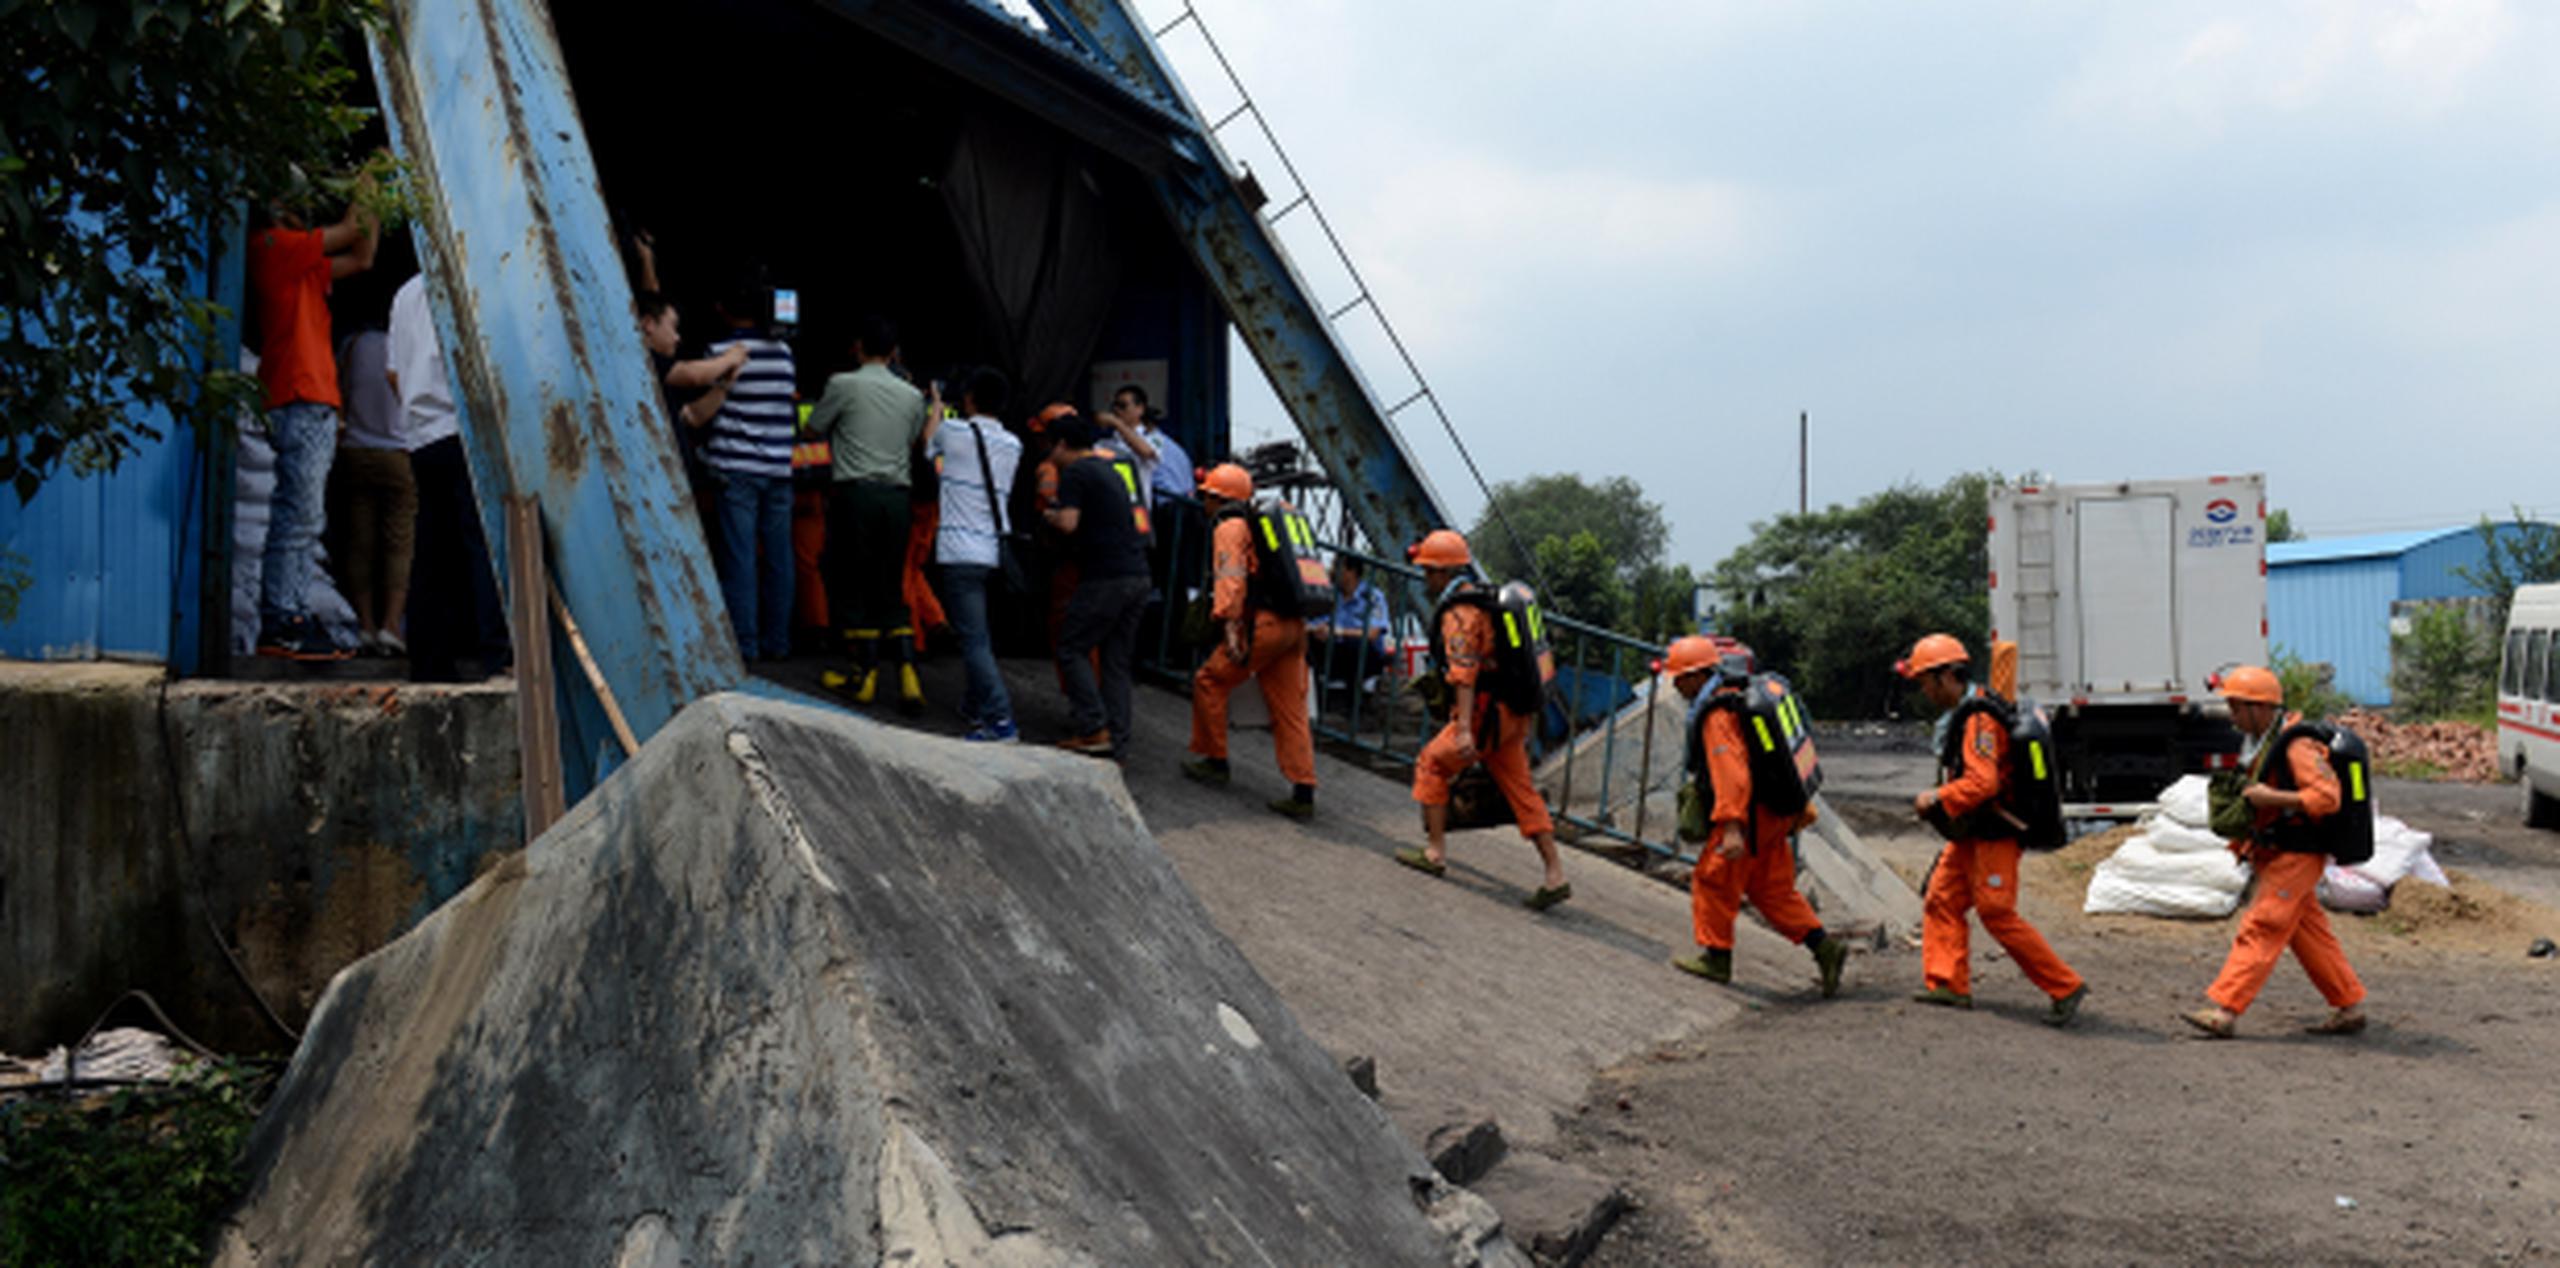 Las tareas de rescate siguen buscando a los 25 mineros que continúan atrapados dentro del pozo. (AP Foto/Zhang Duan)